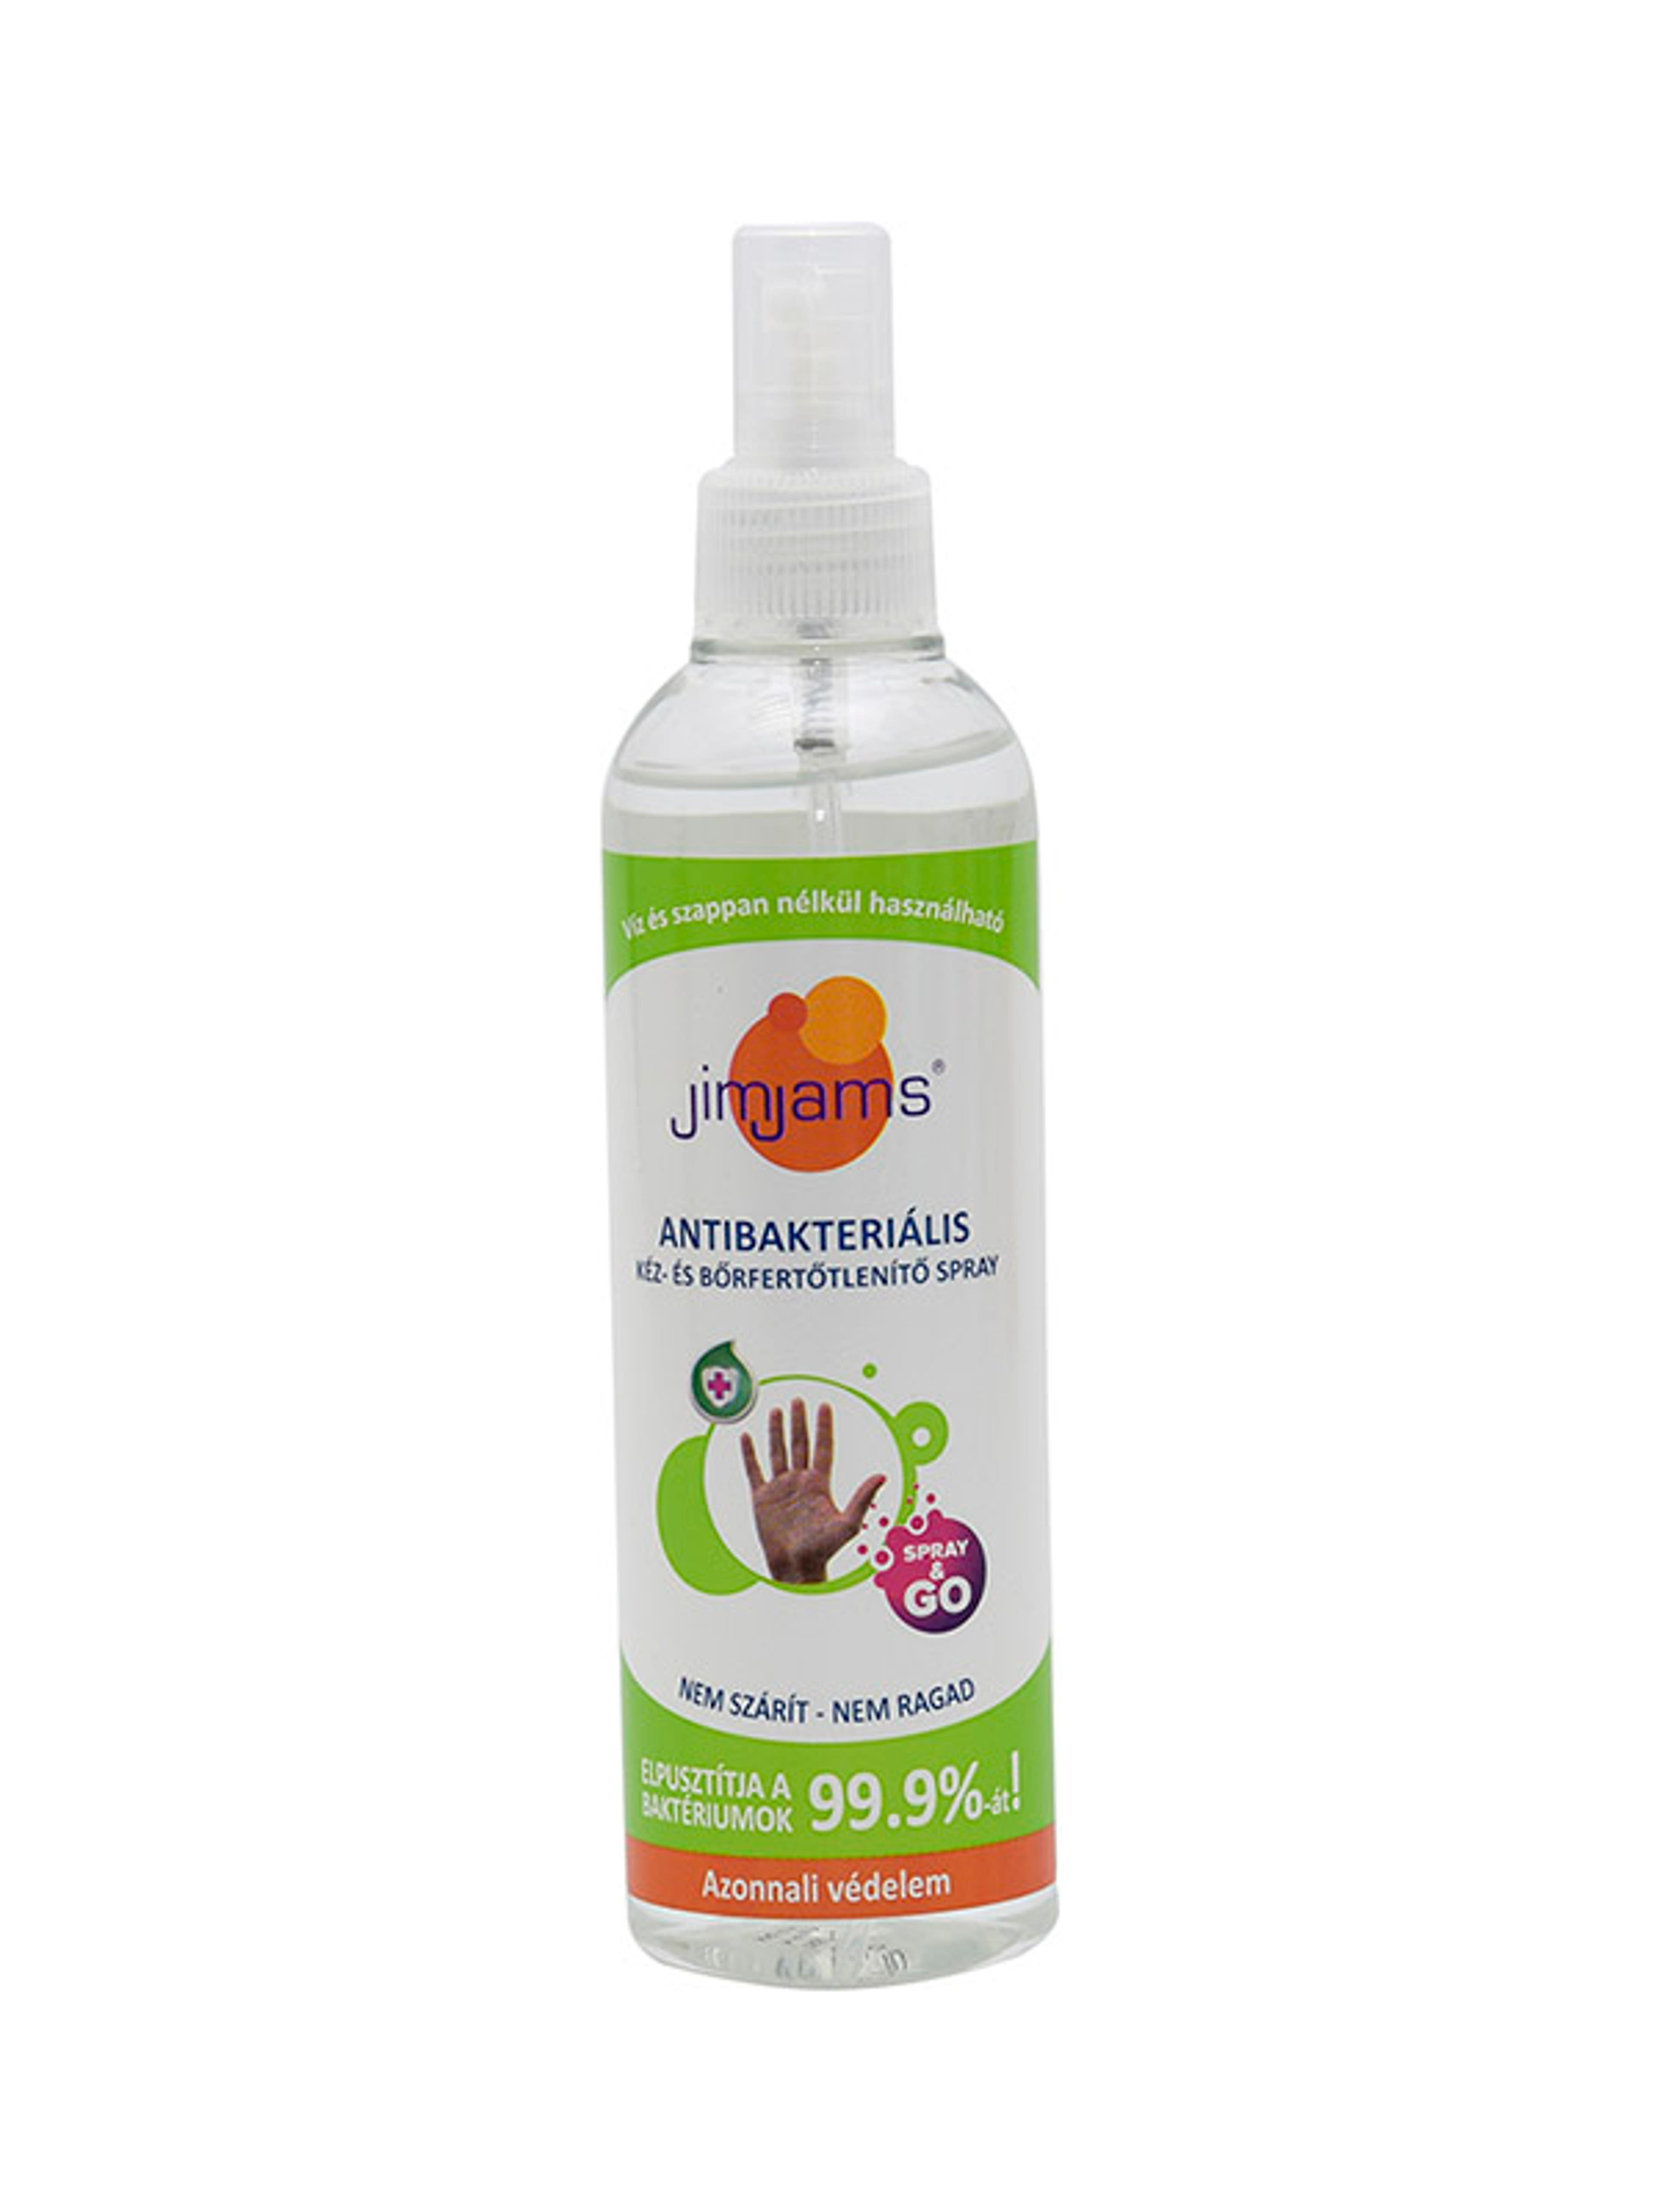 JimJams antibakteriális kéz és börfertőtlenítő Spray - 250 ml